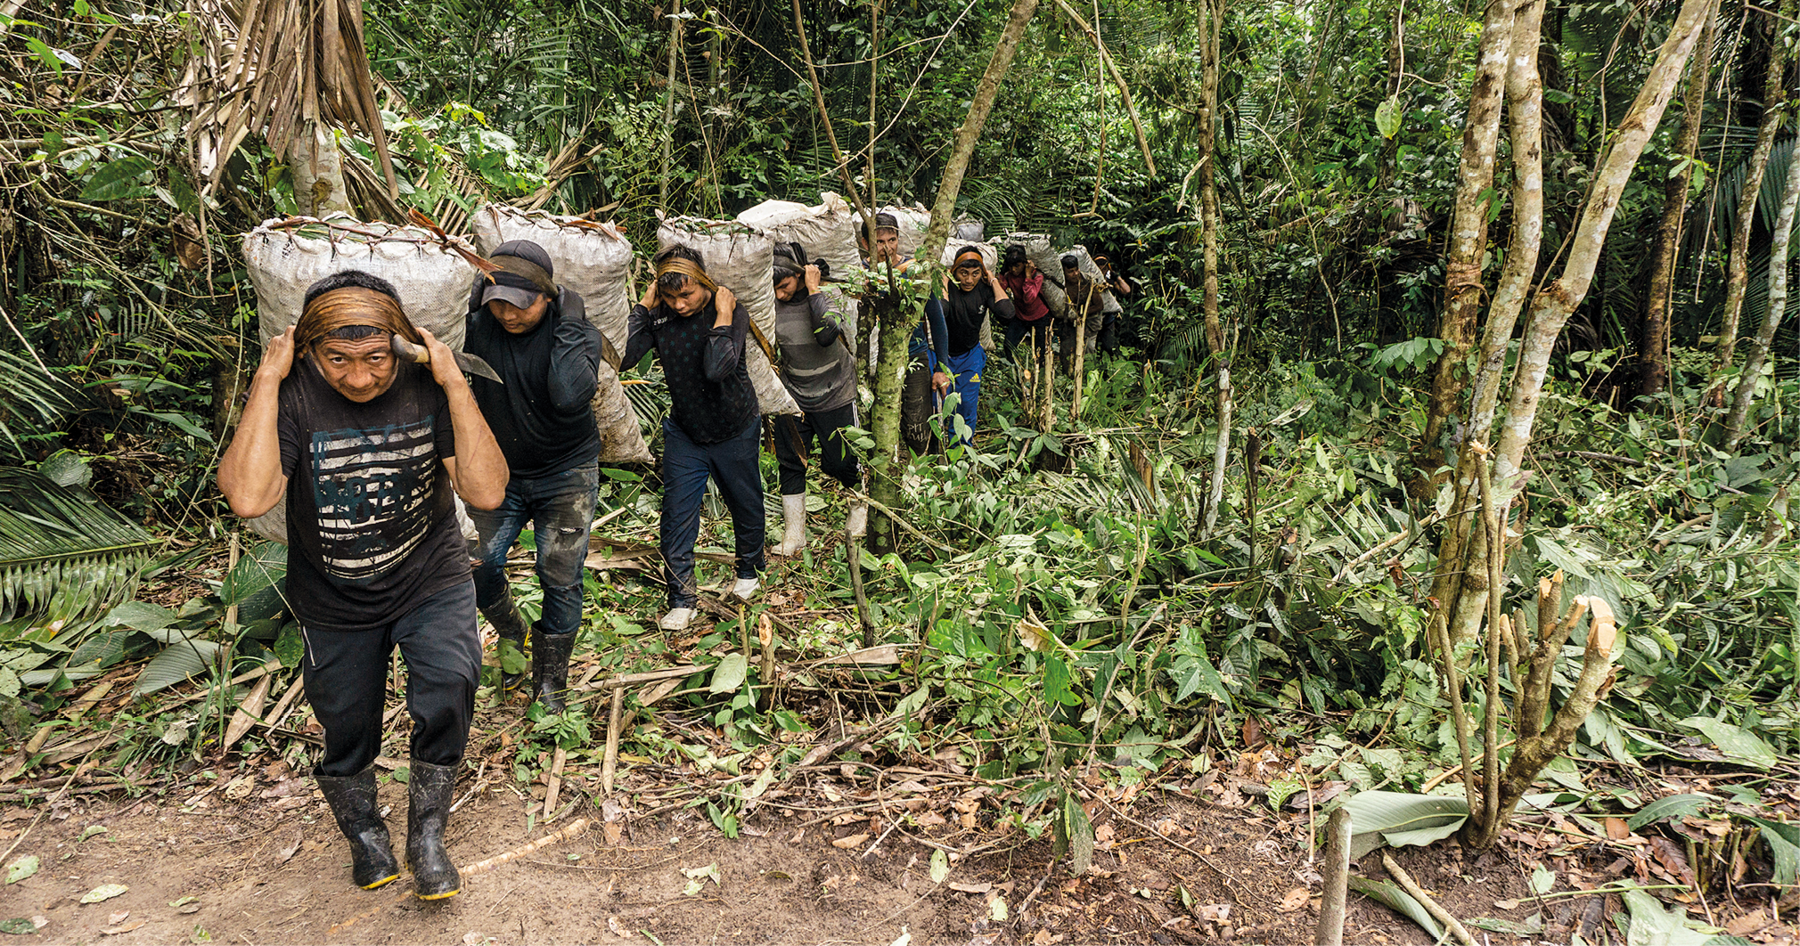 Fotografia. Várias pessoas em pé, enfileiradas, segurando grandes sacos sobre as costas. Todos estão em meio a uma área de floresta, com solo e vegetação ao redor.